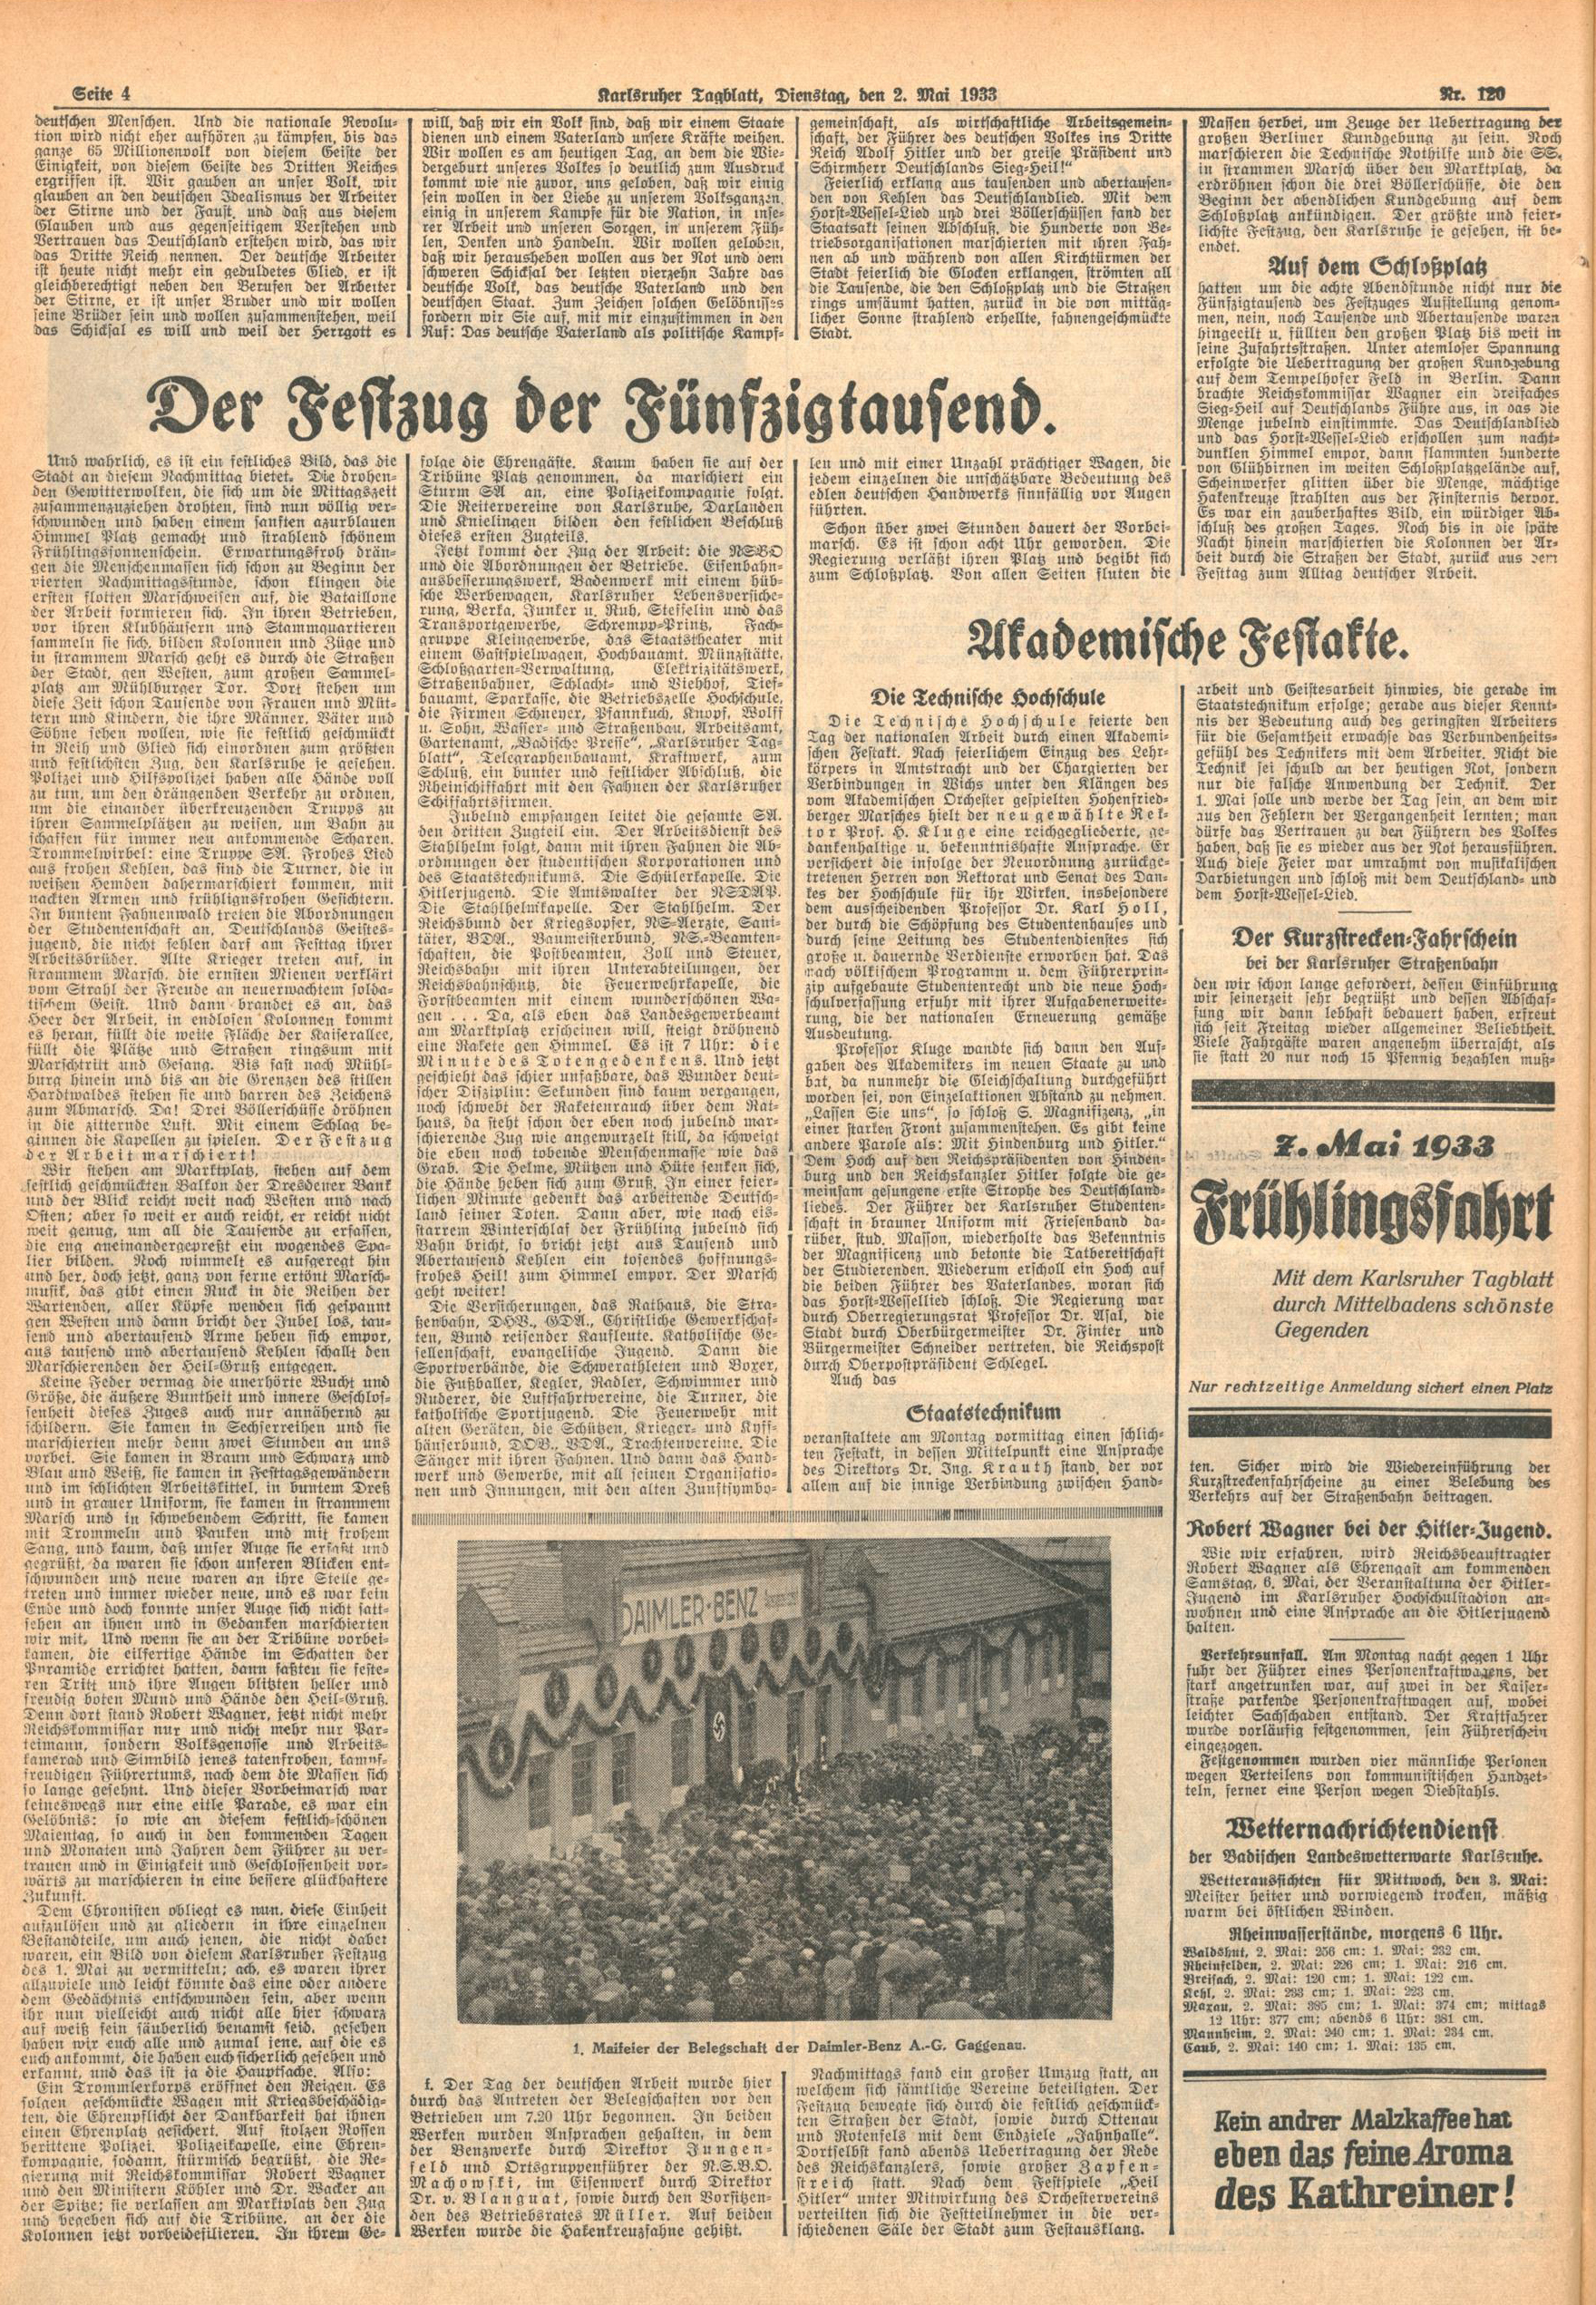 Zu sehen ist eine Seite aus folgender Zeitung: Karlsruher Tagblatt Nr. 120, Dienstag, den 2. Mai 1933